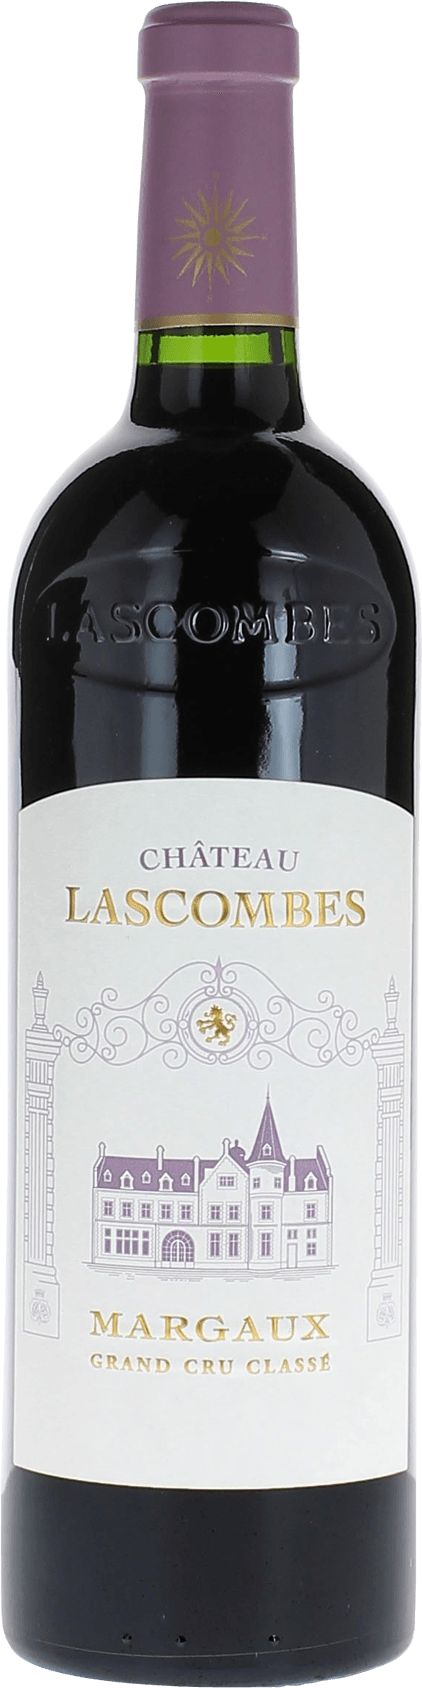 Lascombes 2018 3me Grand cru class Margaux, Bordeaux rouge